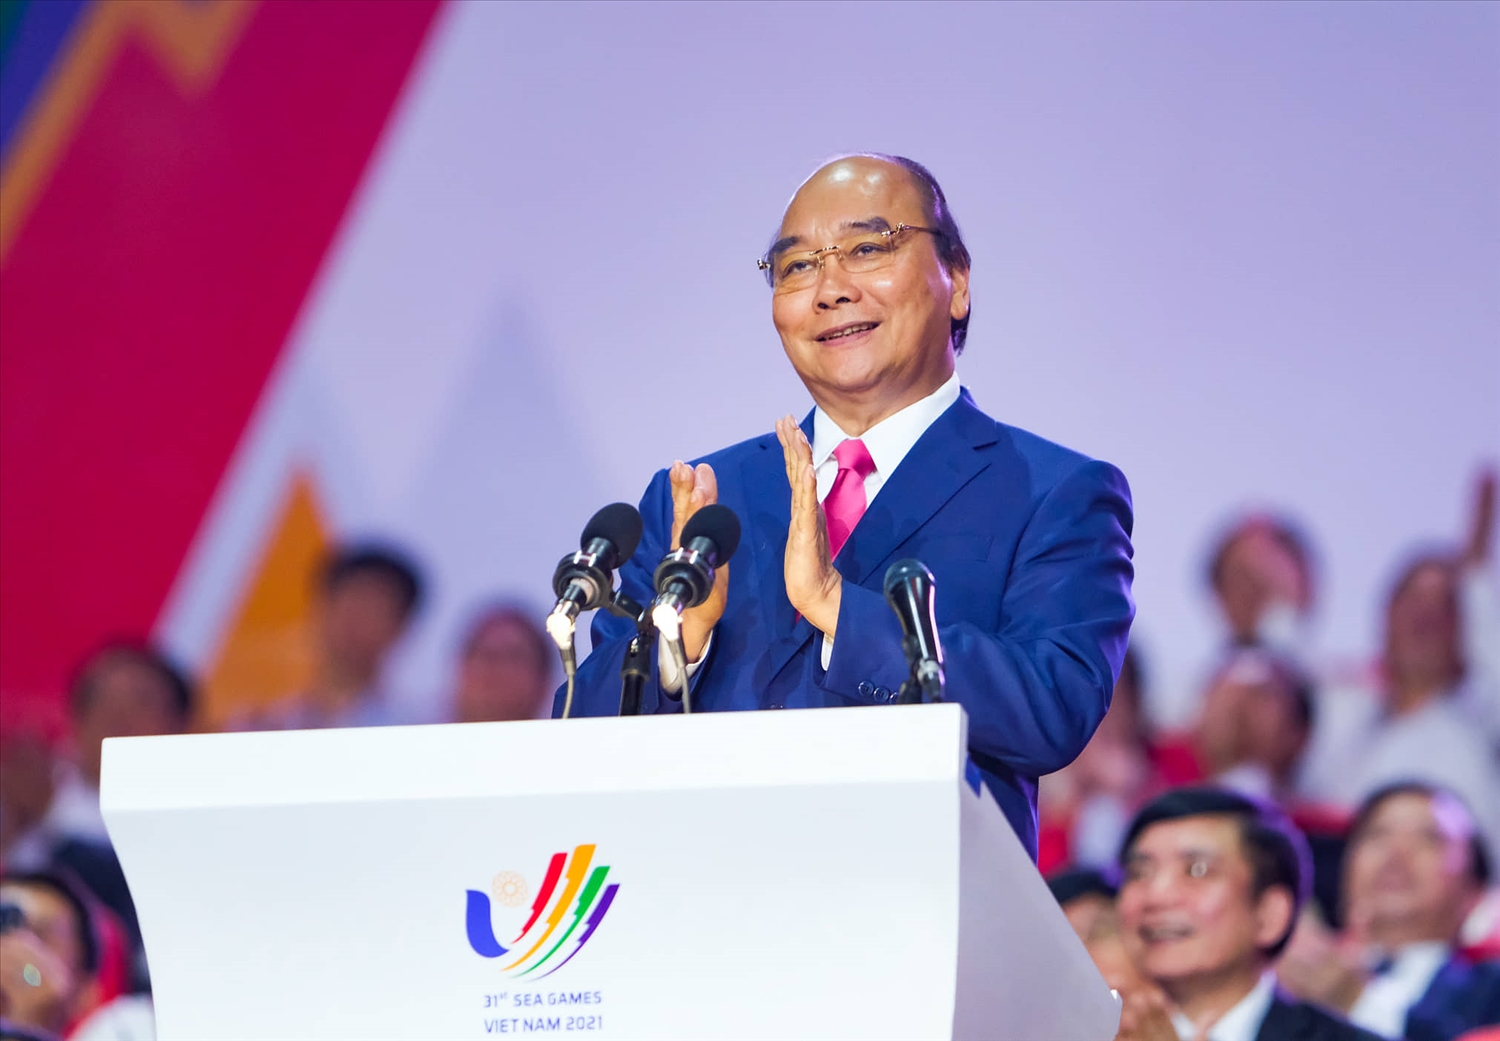 Chủ tịch nước Nguyễn Xuân Phúc tuyên bố khai mạc SEA Game 31